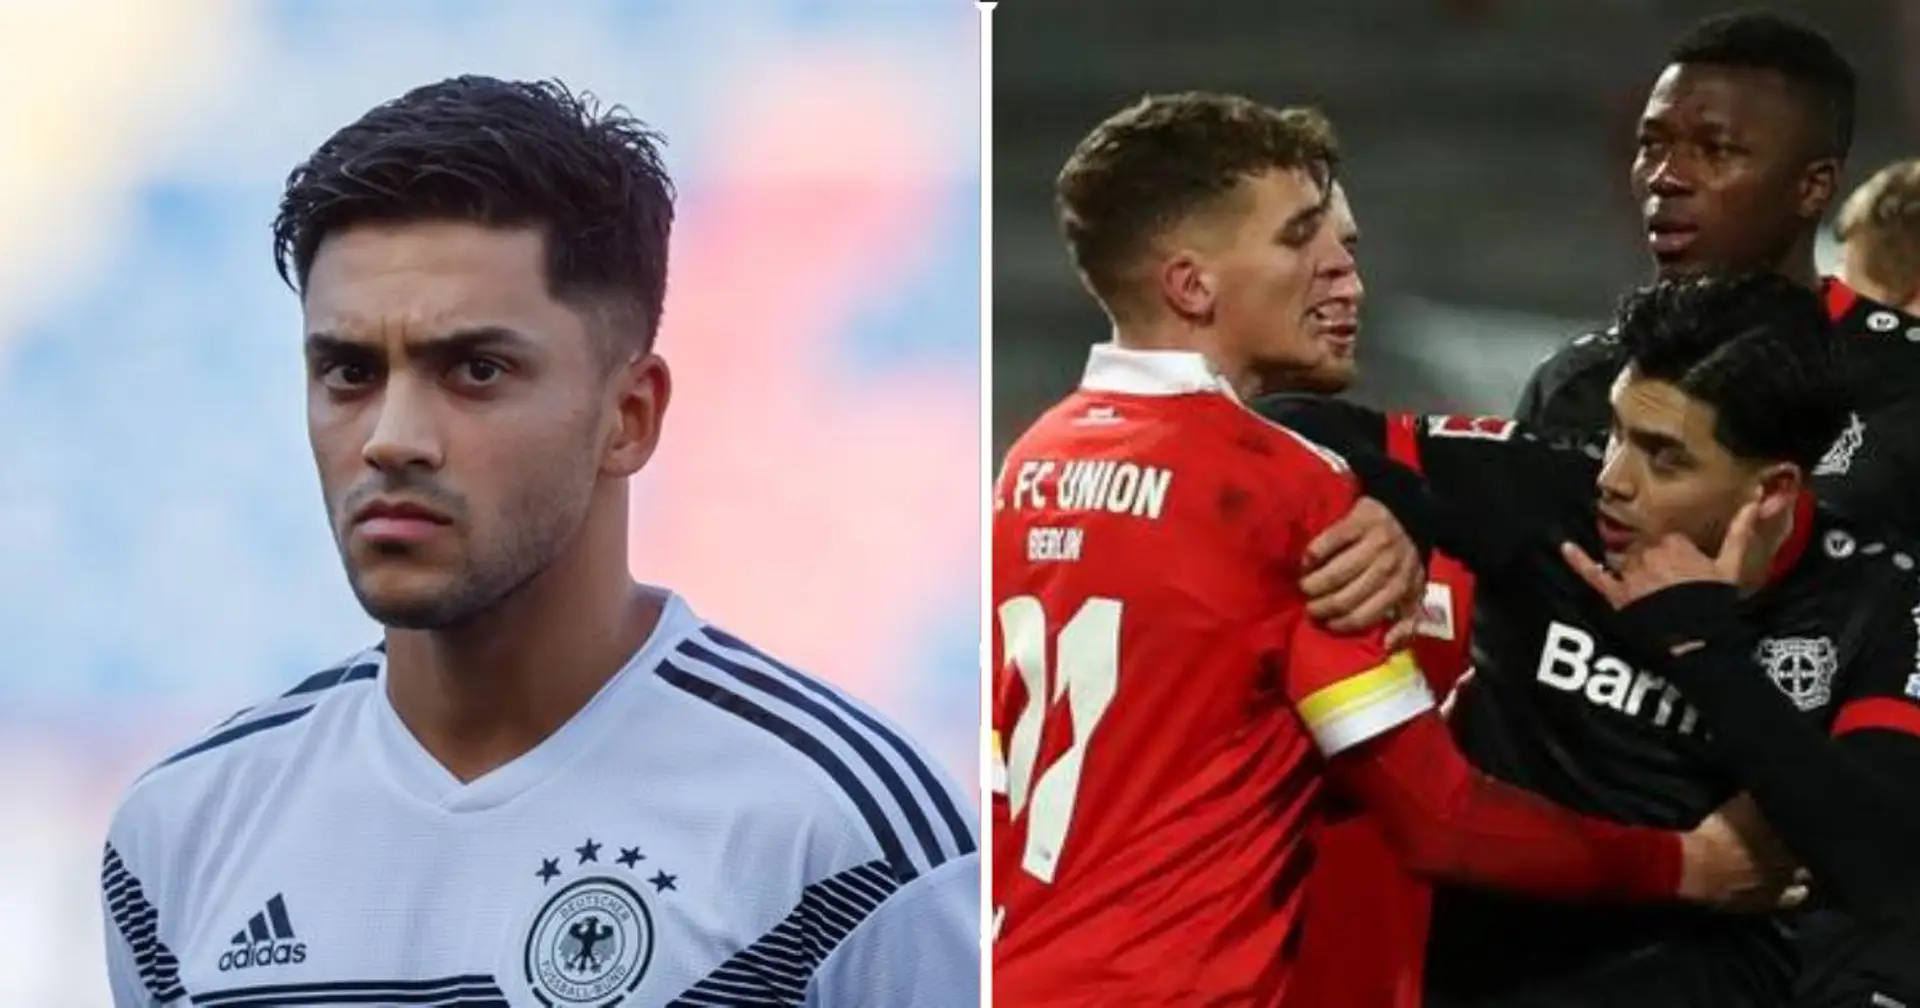 Union-Spieler nennt Bayer-Mittelfeldspieler "Sch*** Afghane" während eines Zoffs auf dem Platz